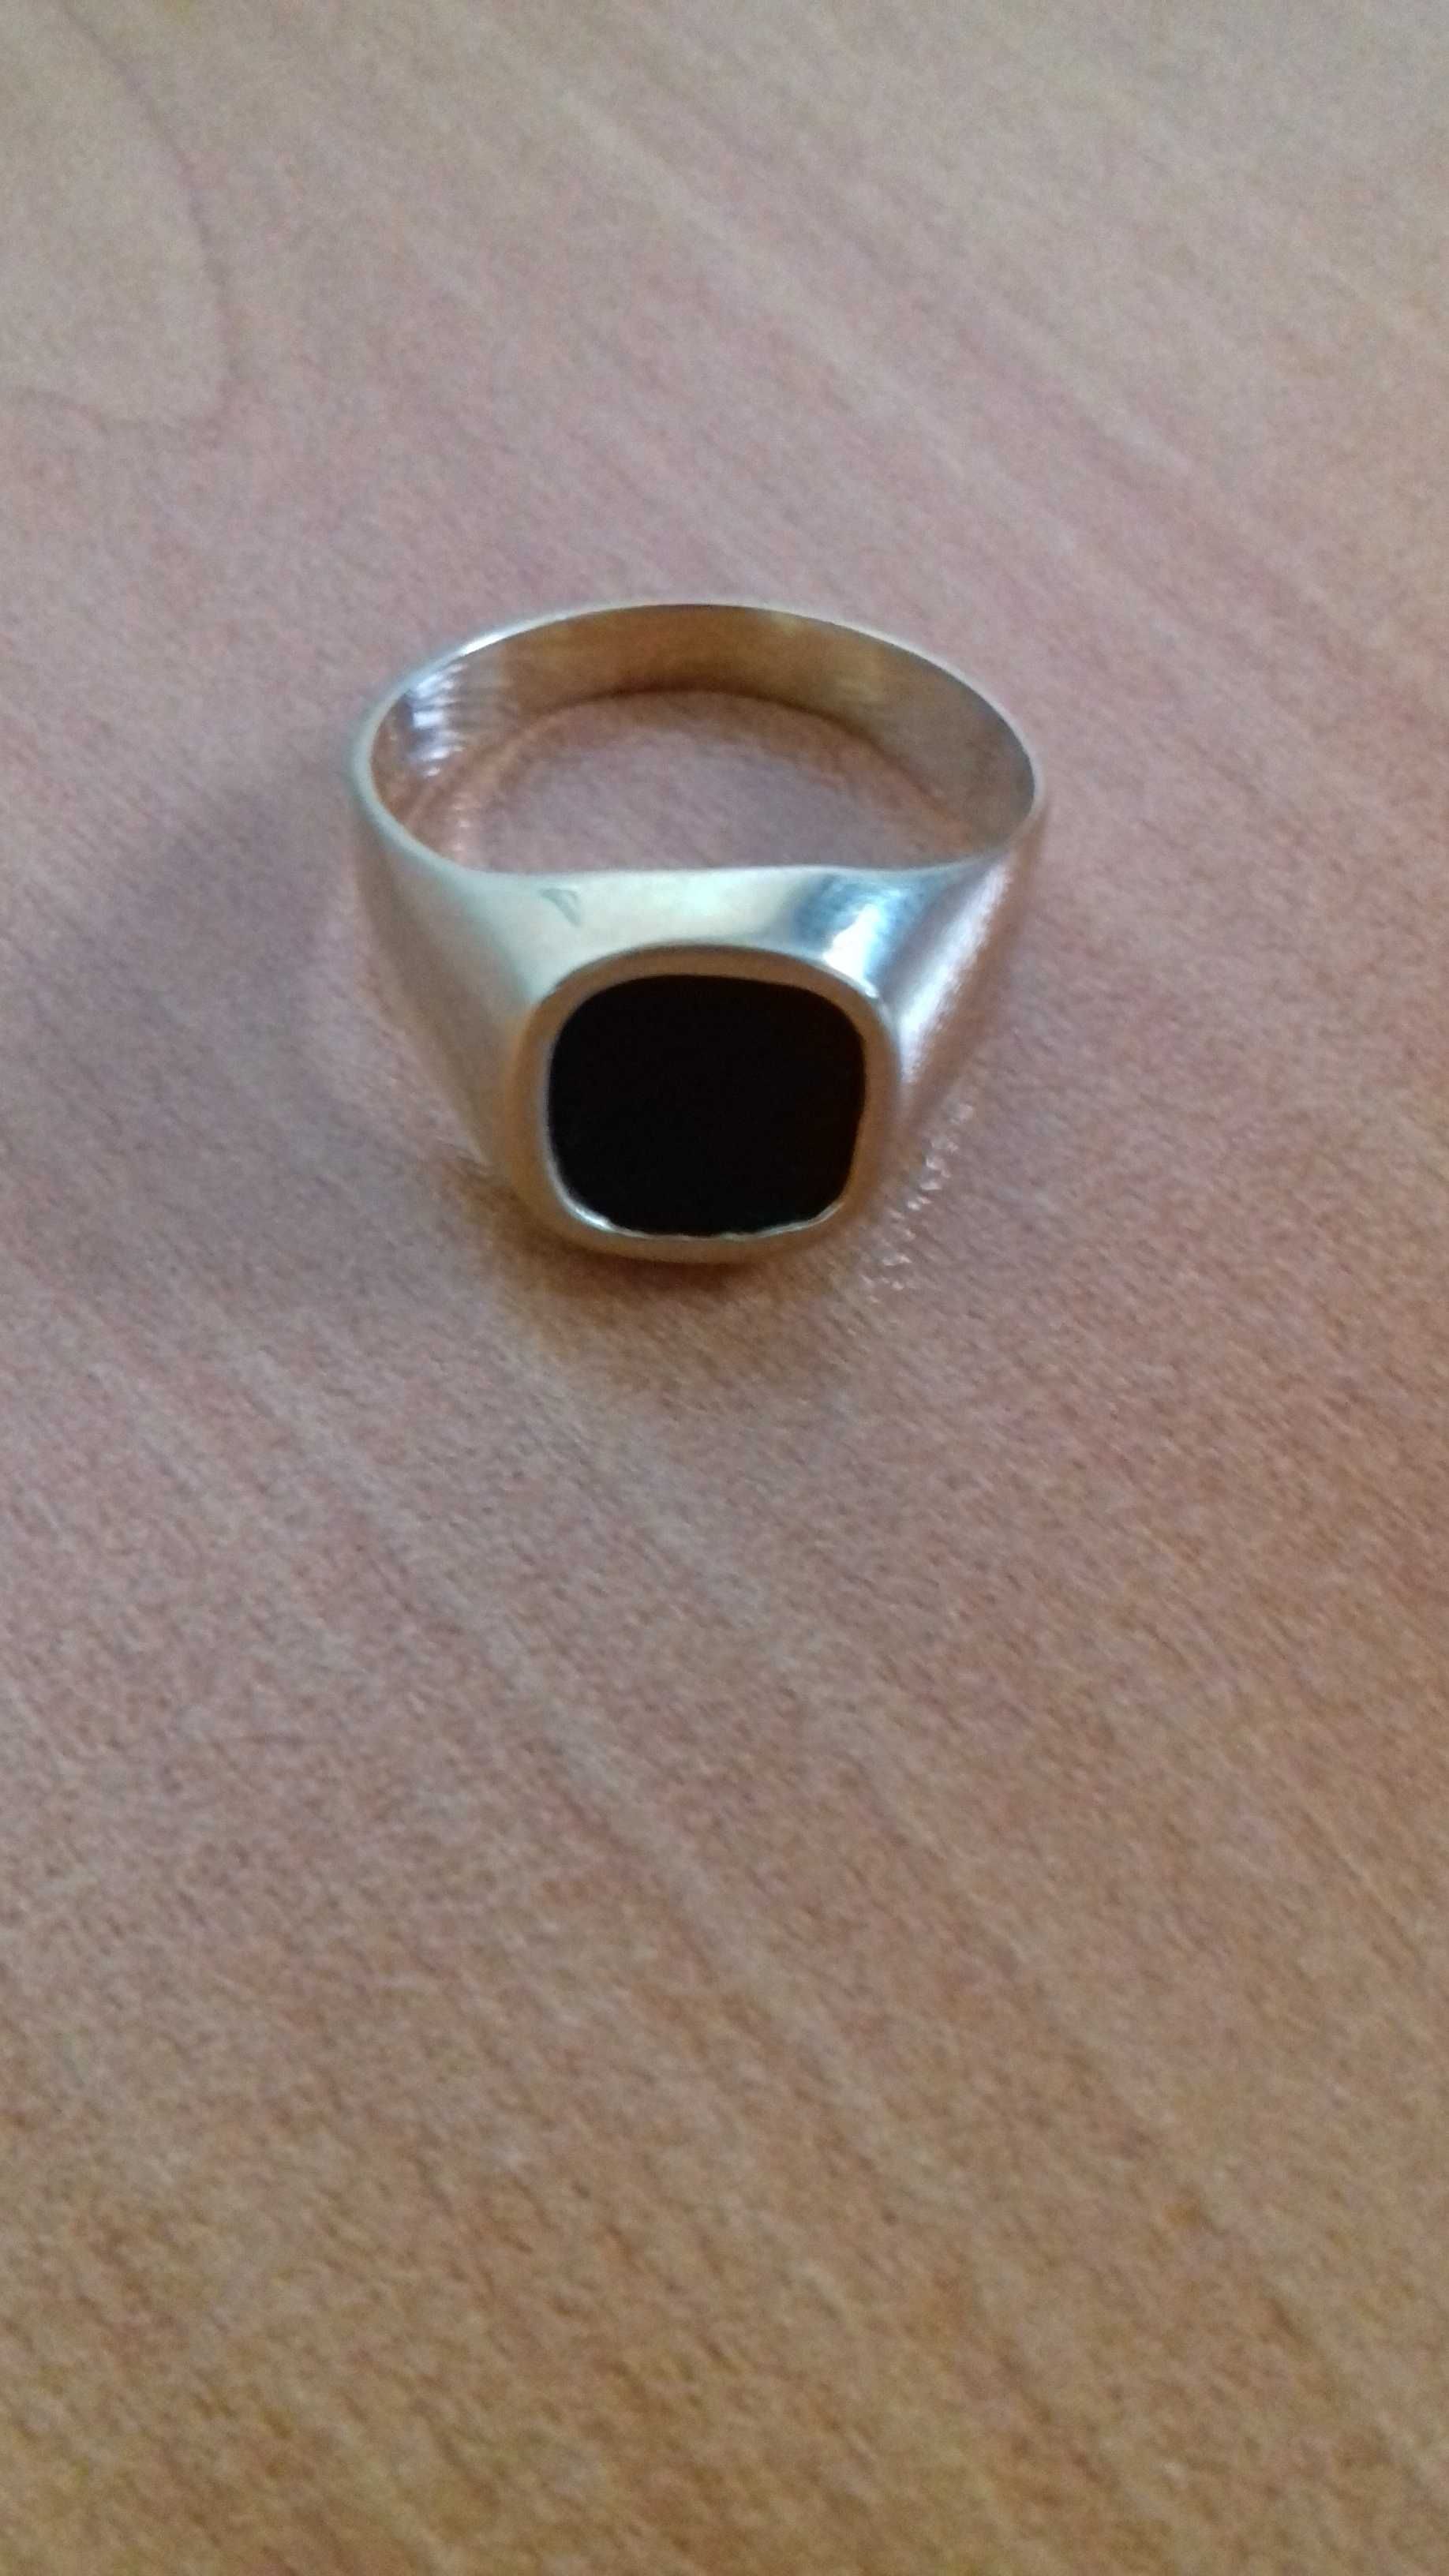 Златен мъжки пръстен с черен камък - 5 грама